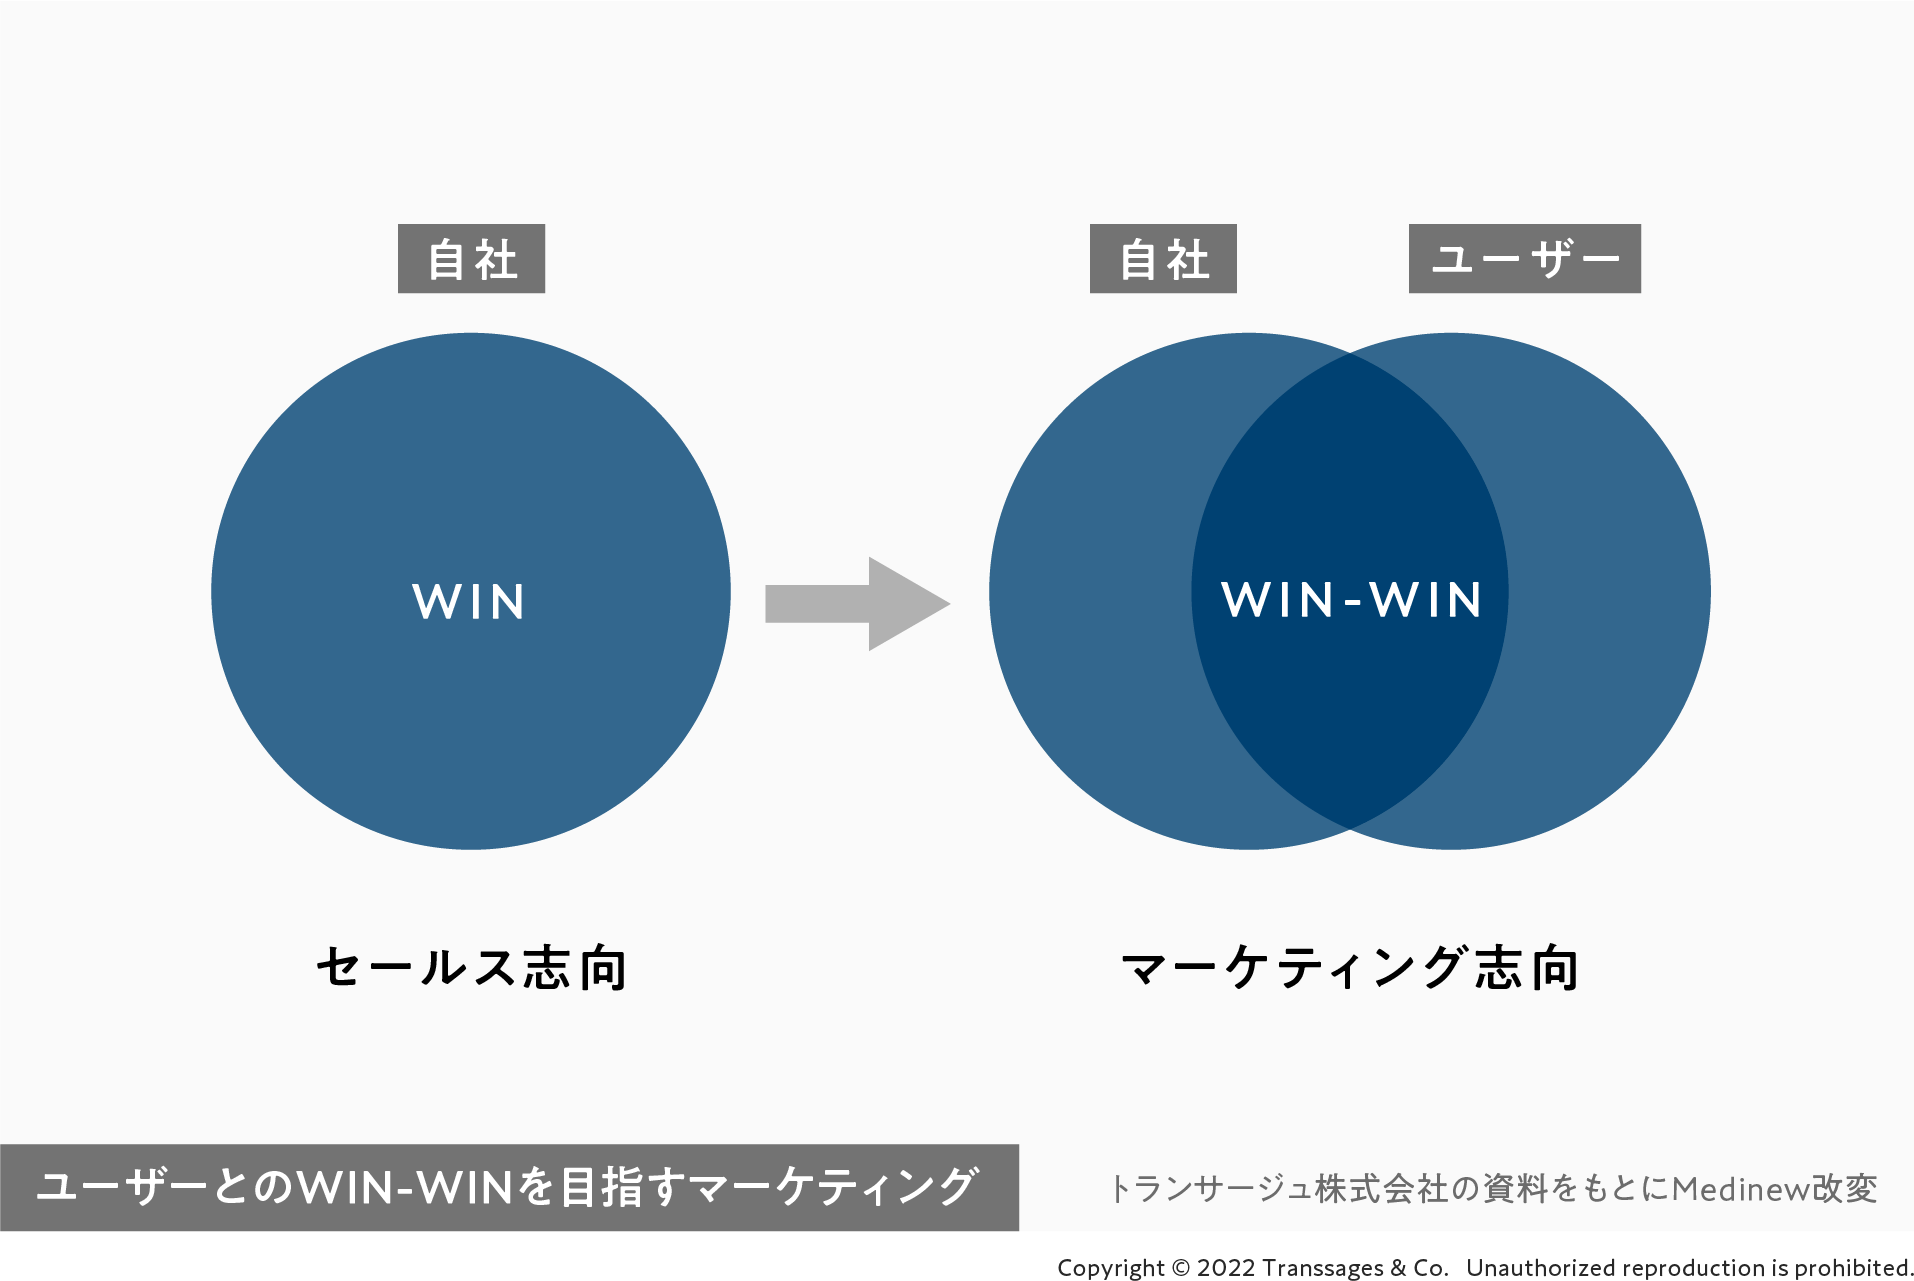 ユーザーとWIN-WINを目指すマーケティング